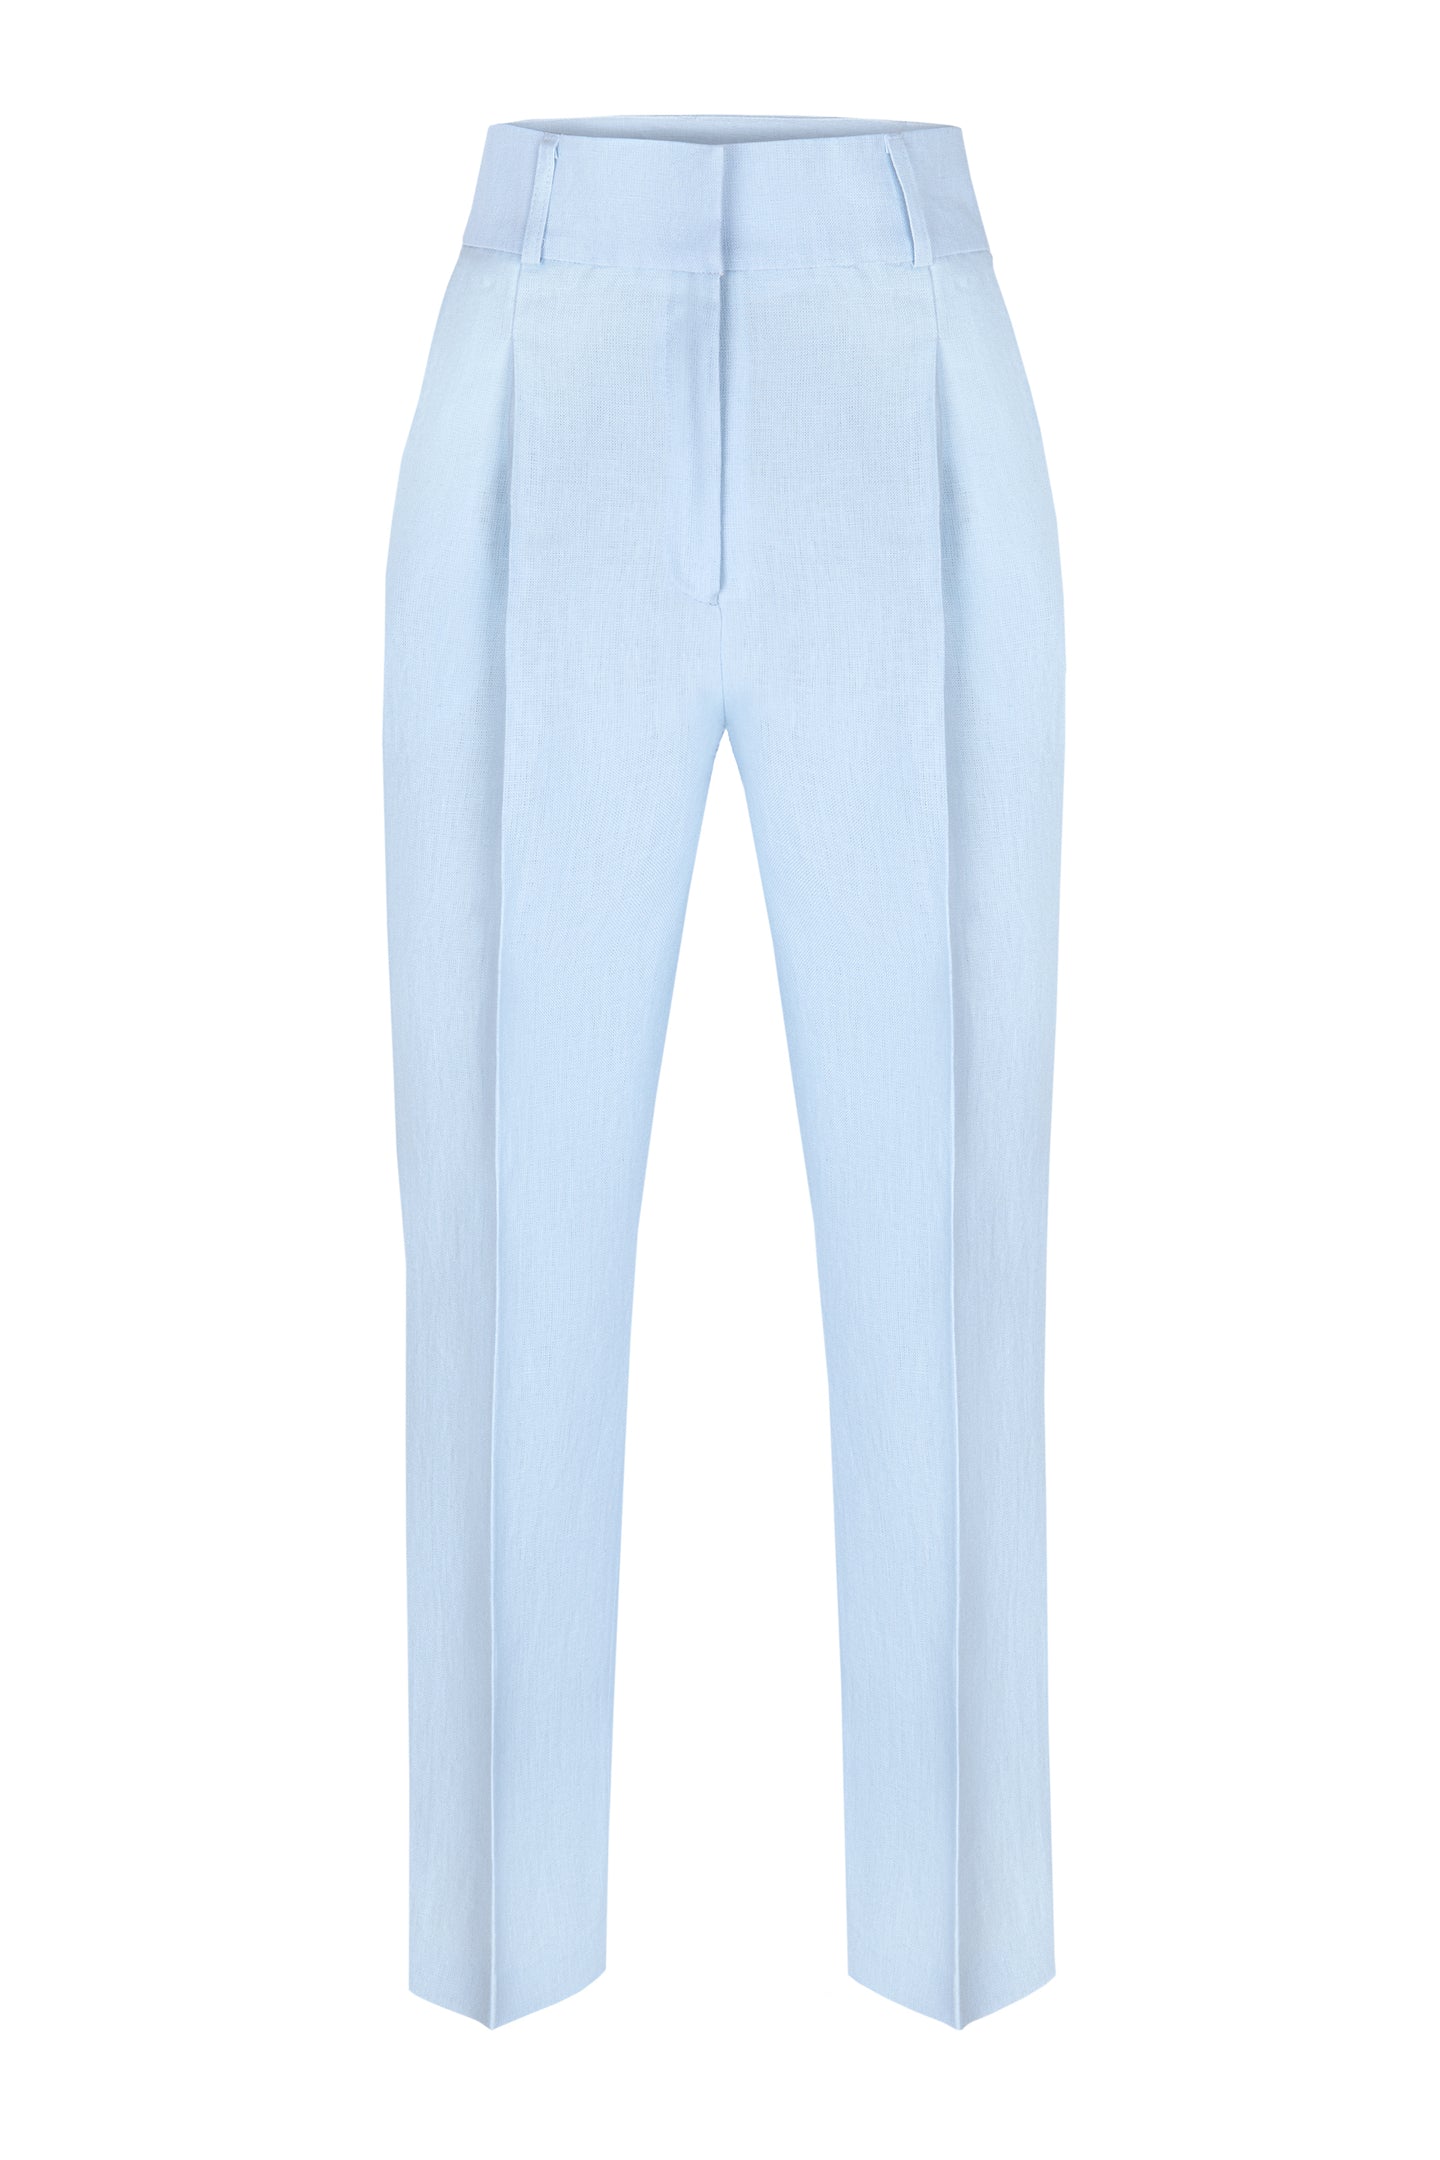 Women Tailored linen trousers with pleats, pantalon en lin femme